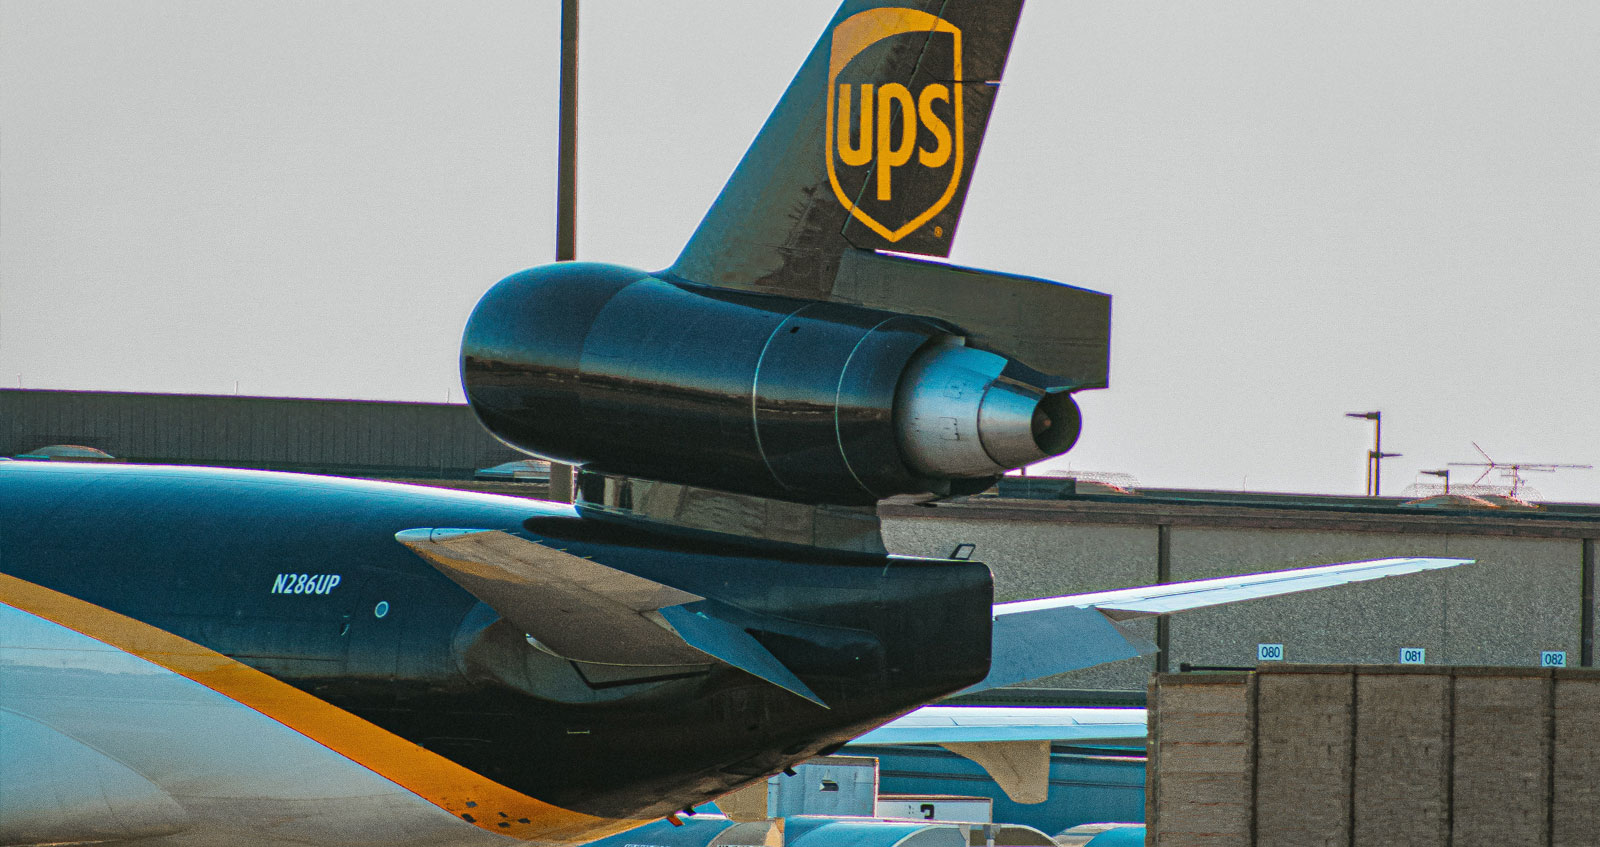 UPS competitors